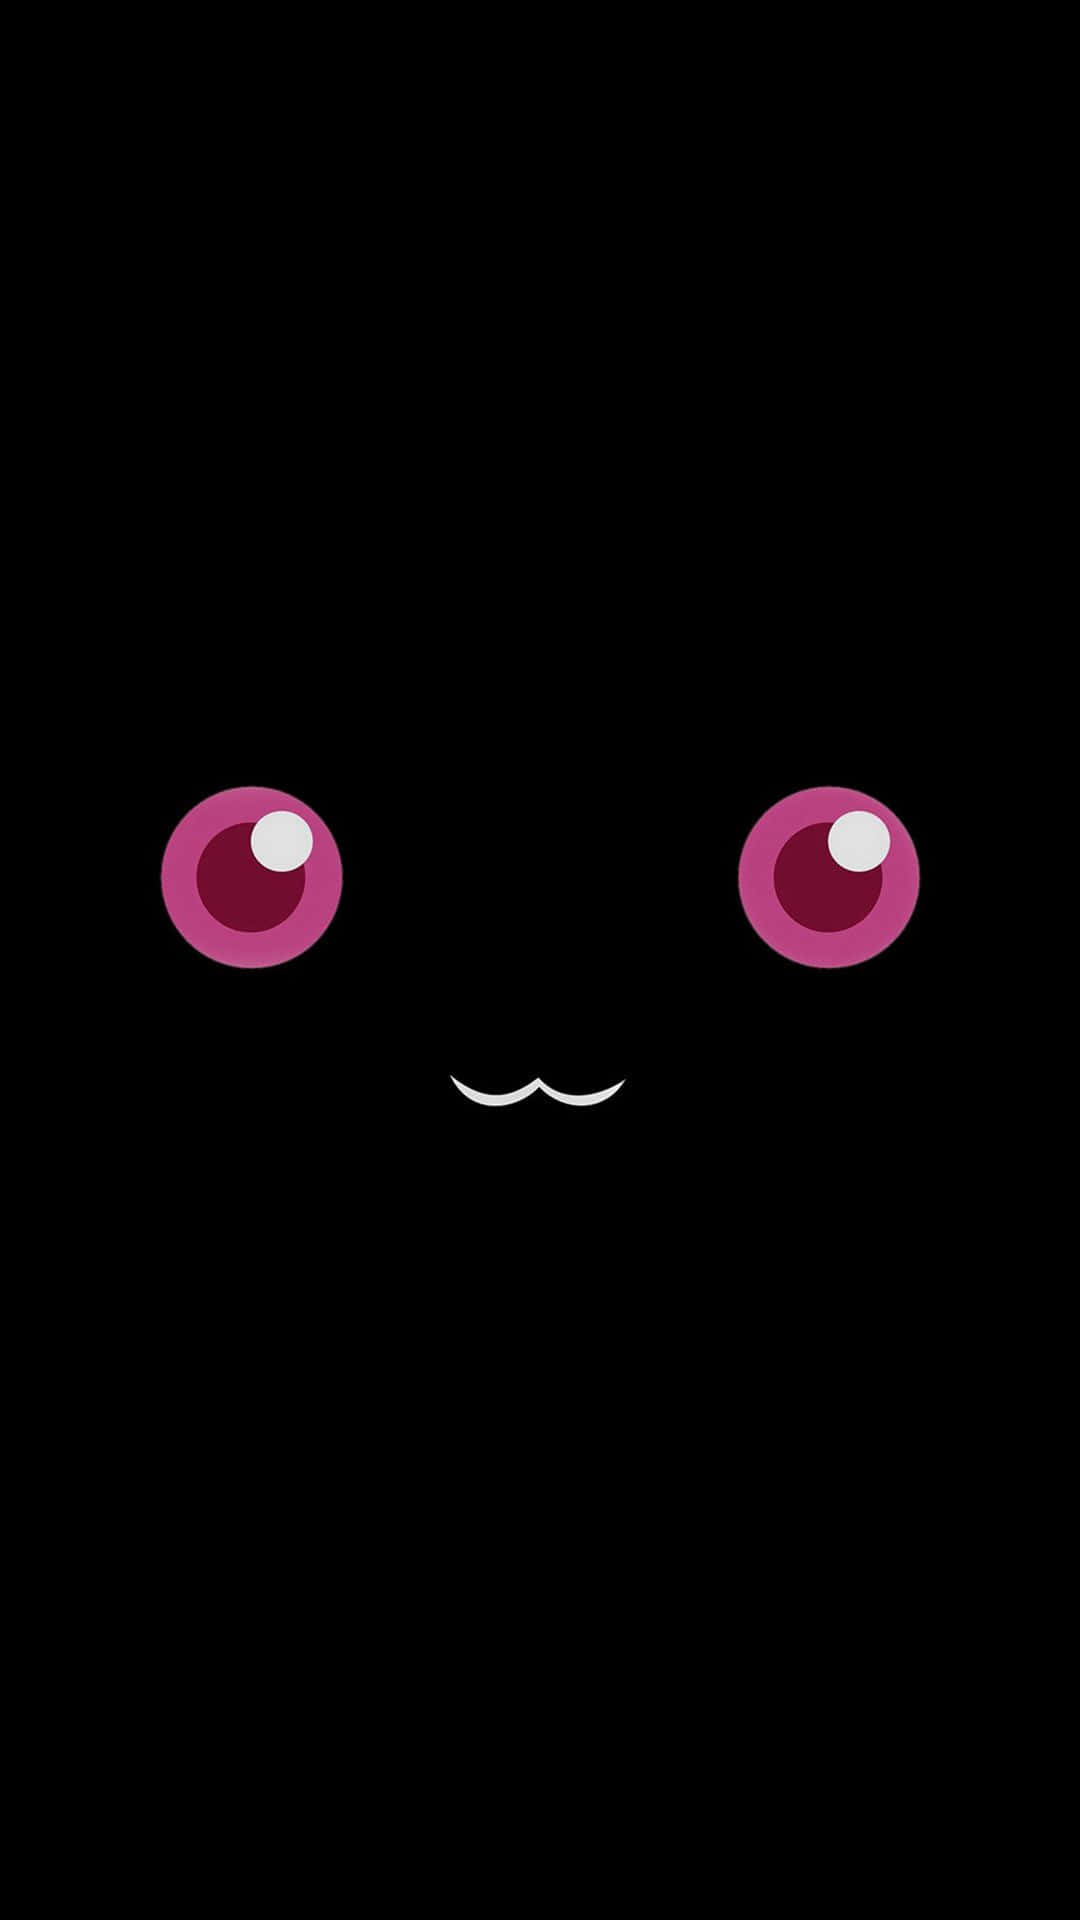 Eineschwarze Katze Mit Pinken Augen Auf Einem Schwarzen Hintergrund. Wallpaper